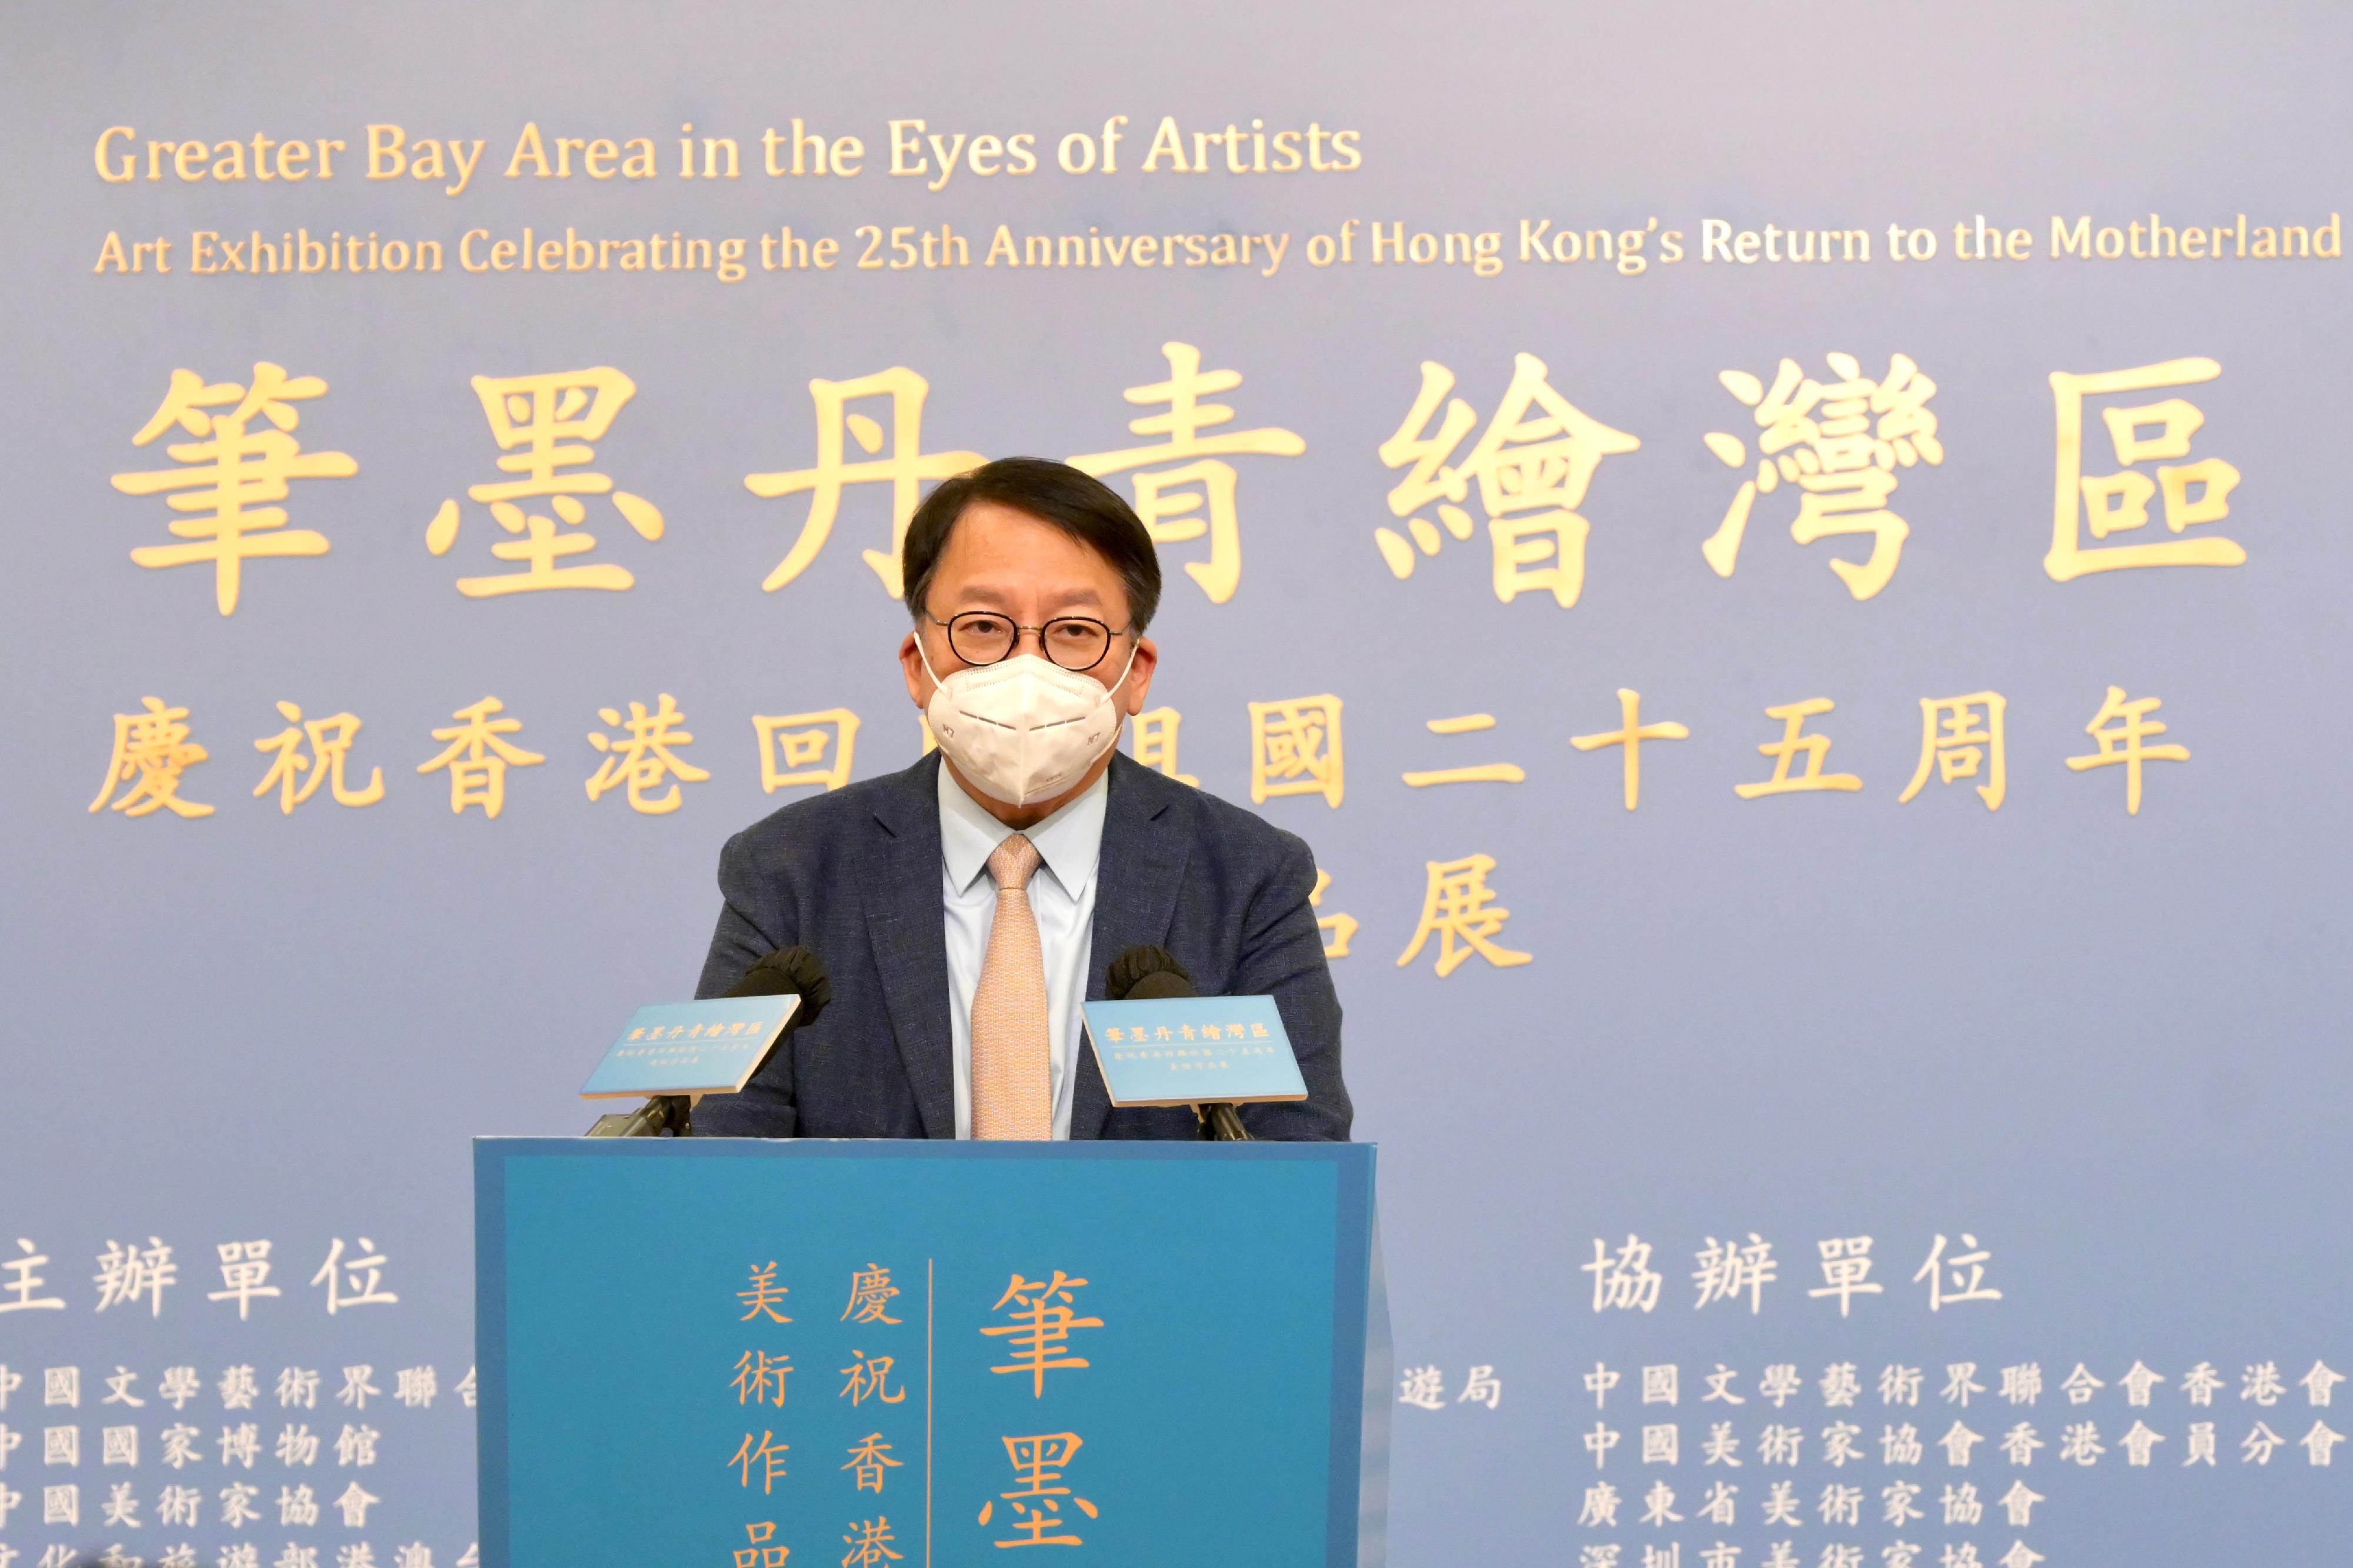 政務司司長陳國基今日（七月九日）下午在「筆墨丹青繪灣區──慶祝香港回歸祖國二十五周年美術作品展」開幕儀式致辭。